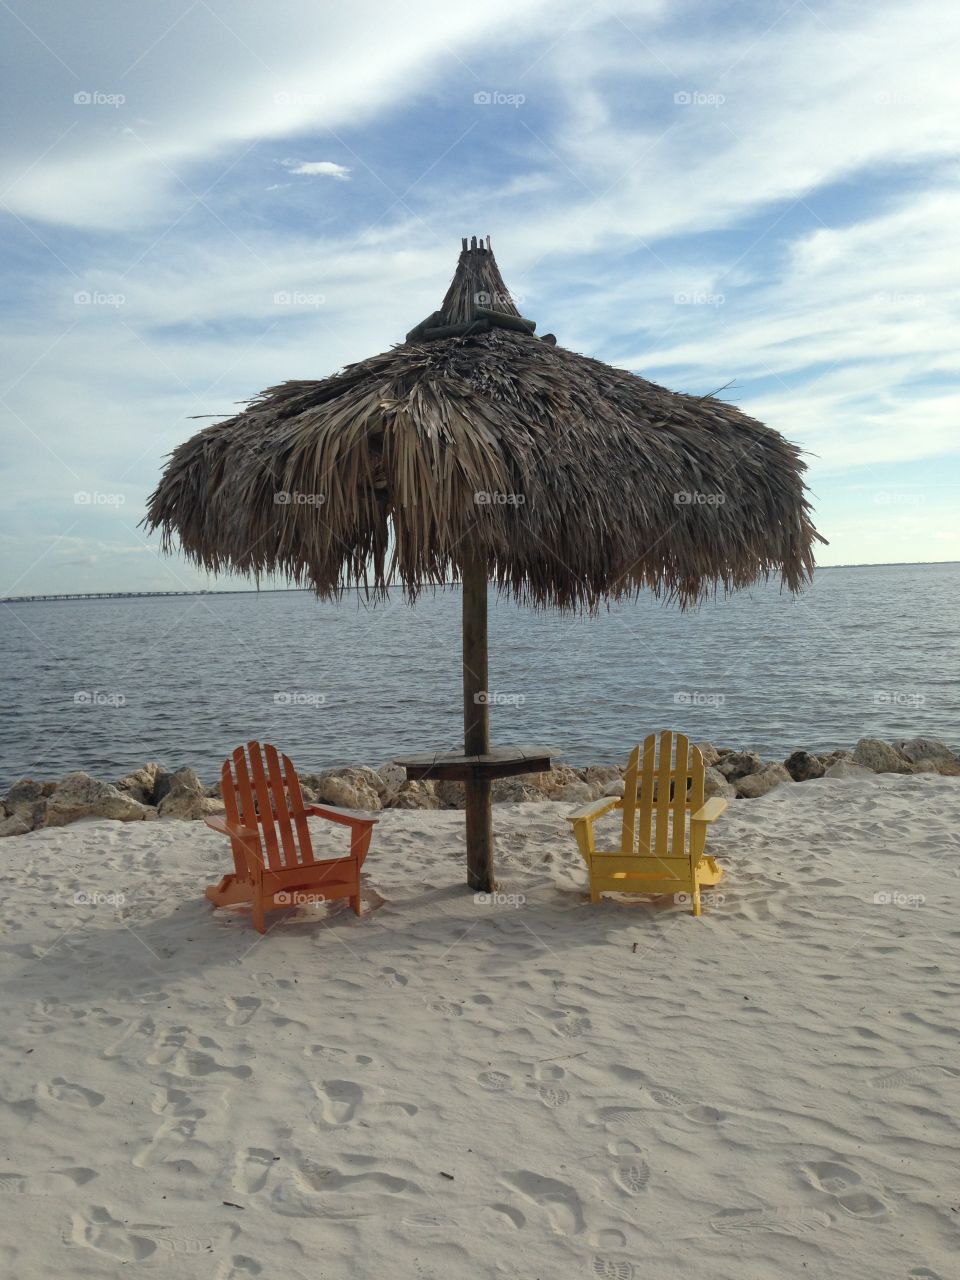 Lounge chair sandy beach